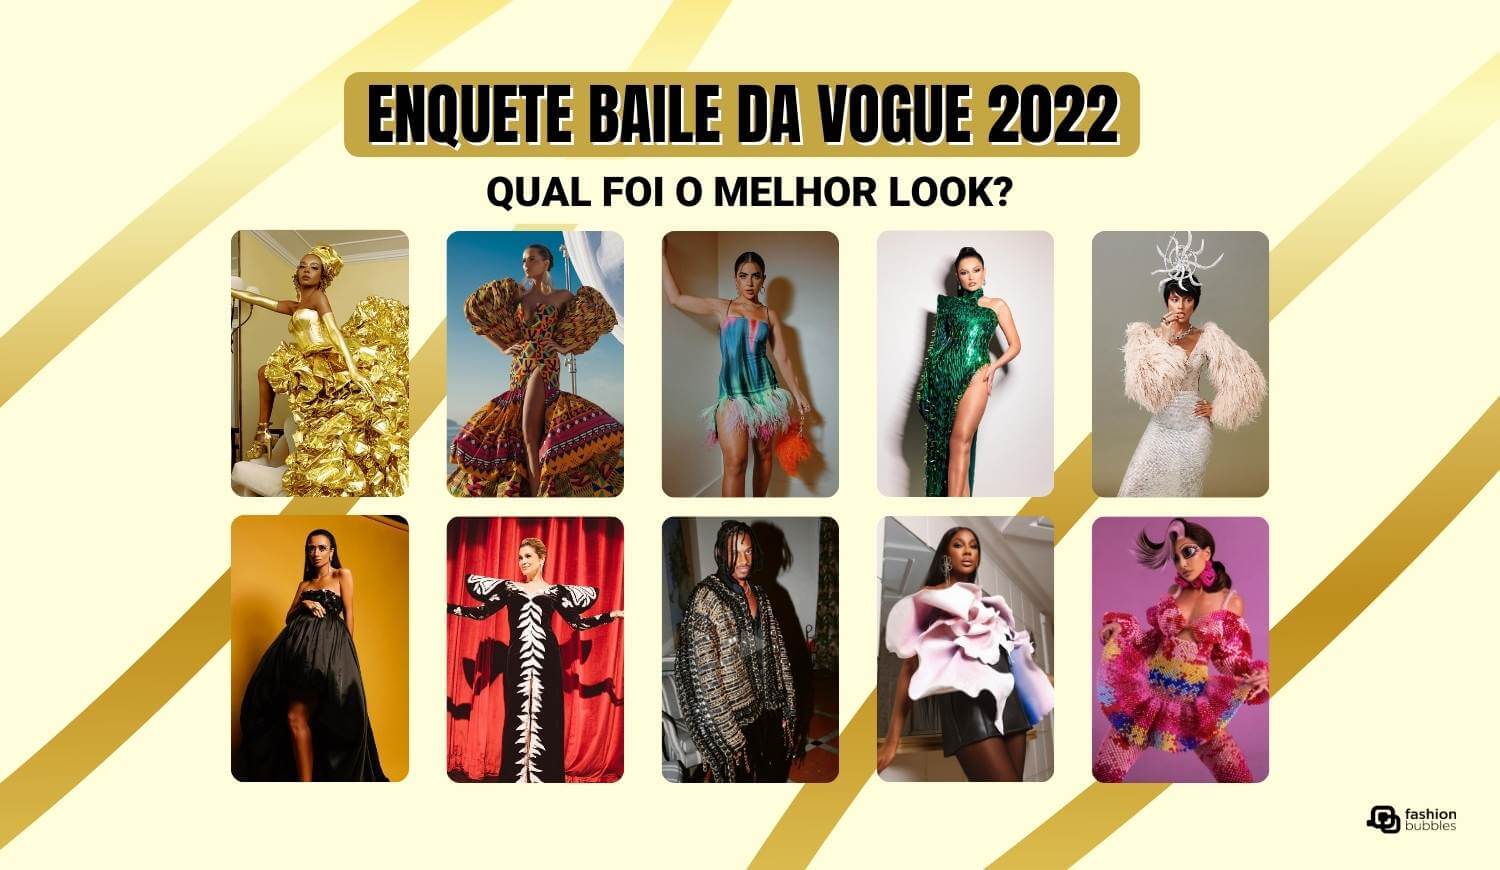 Enquete Baile da Vogue de 2022: qual foi o melhor look?